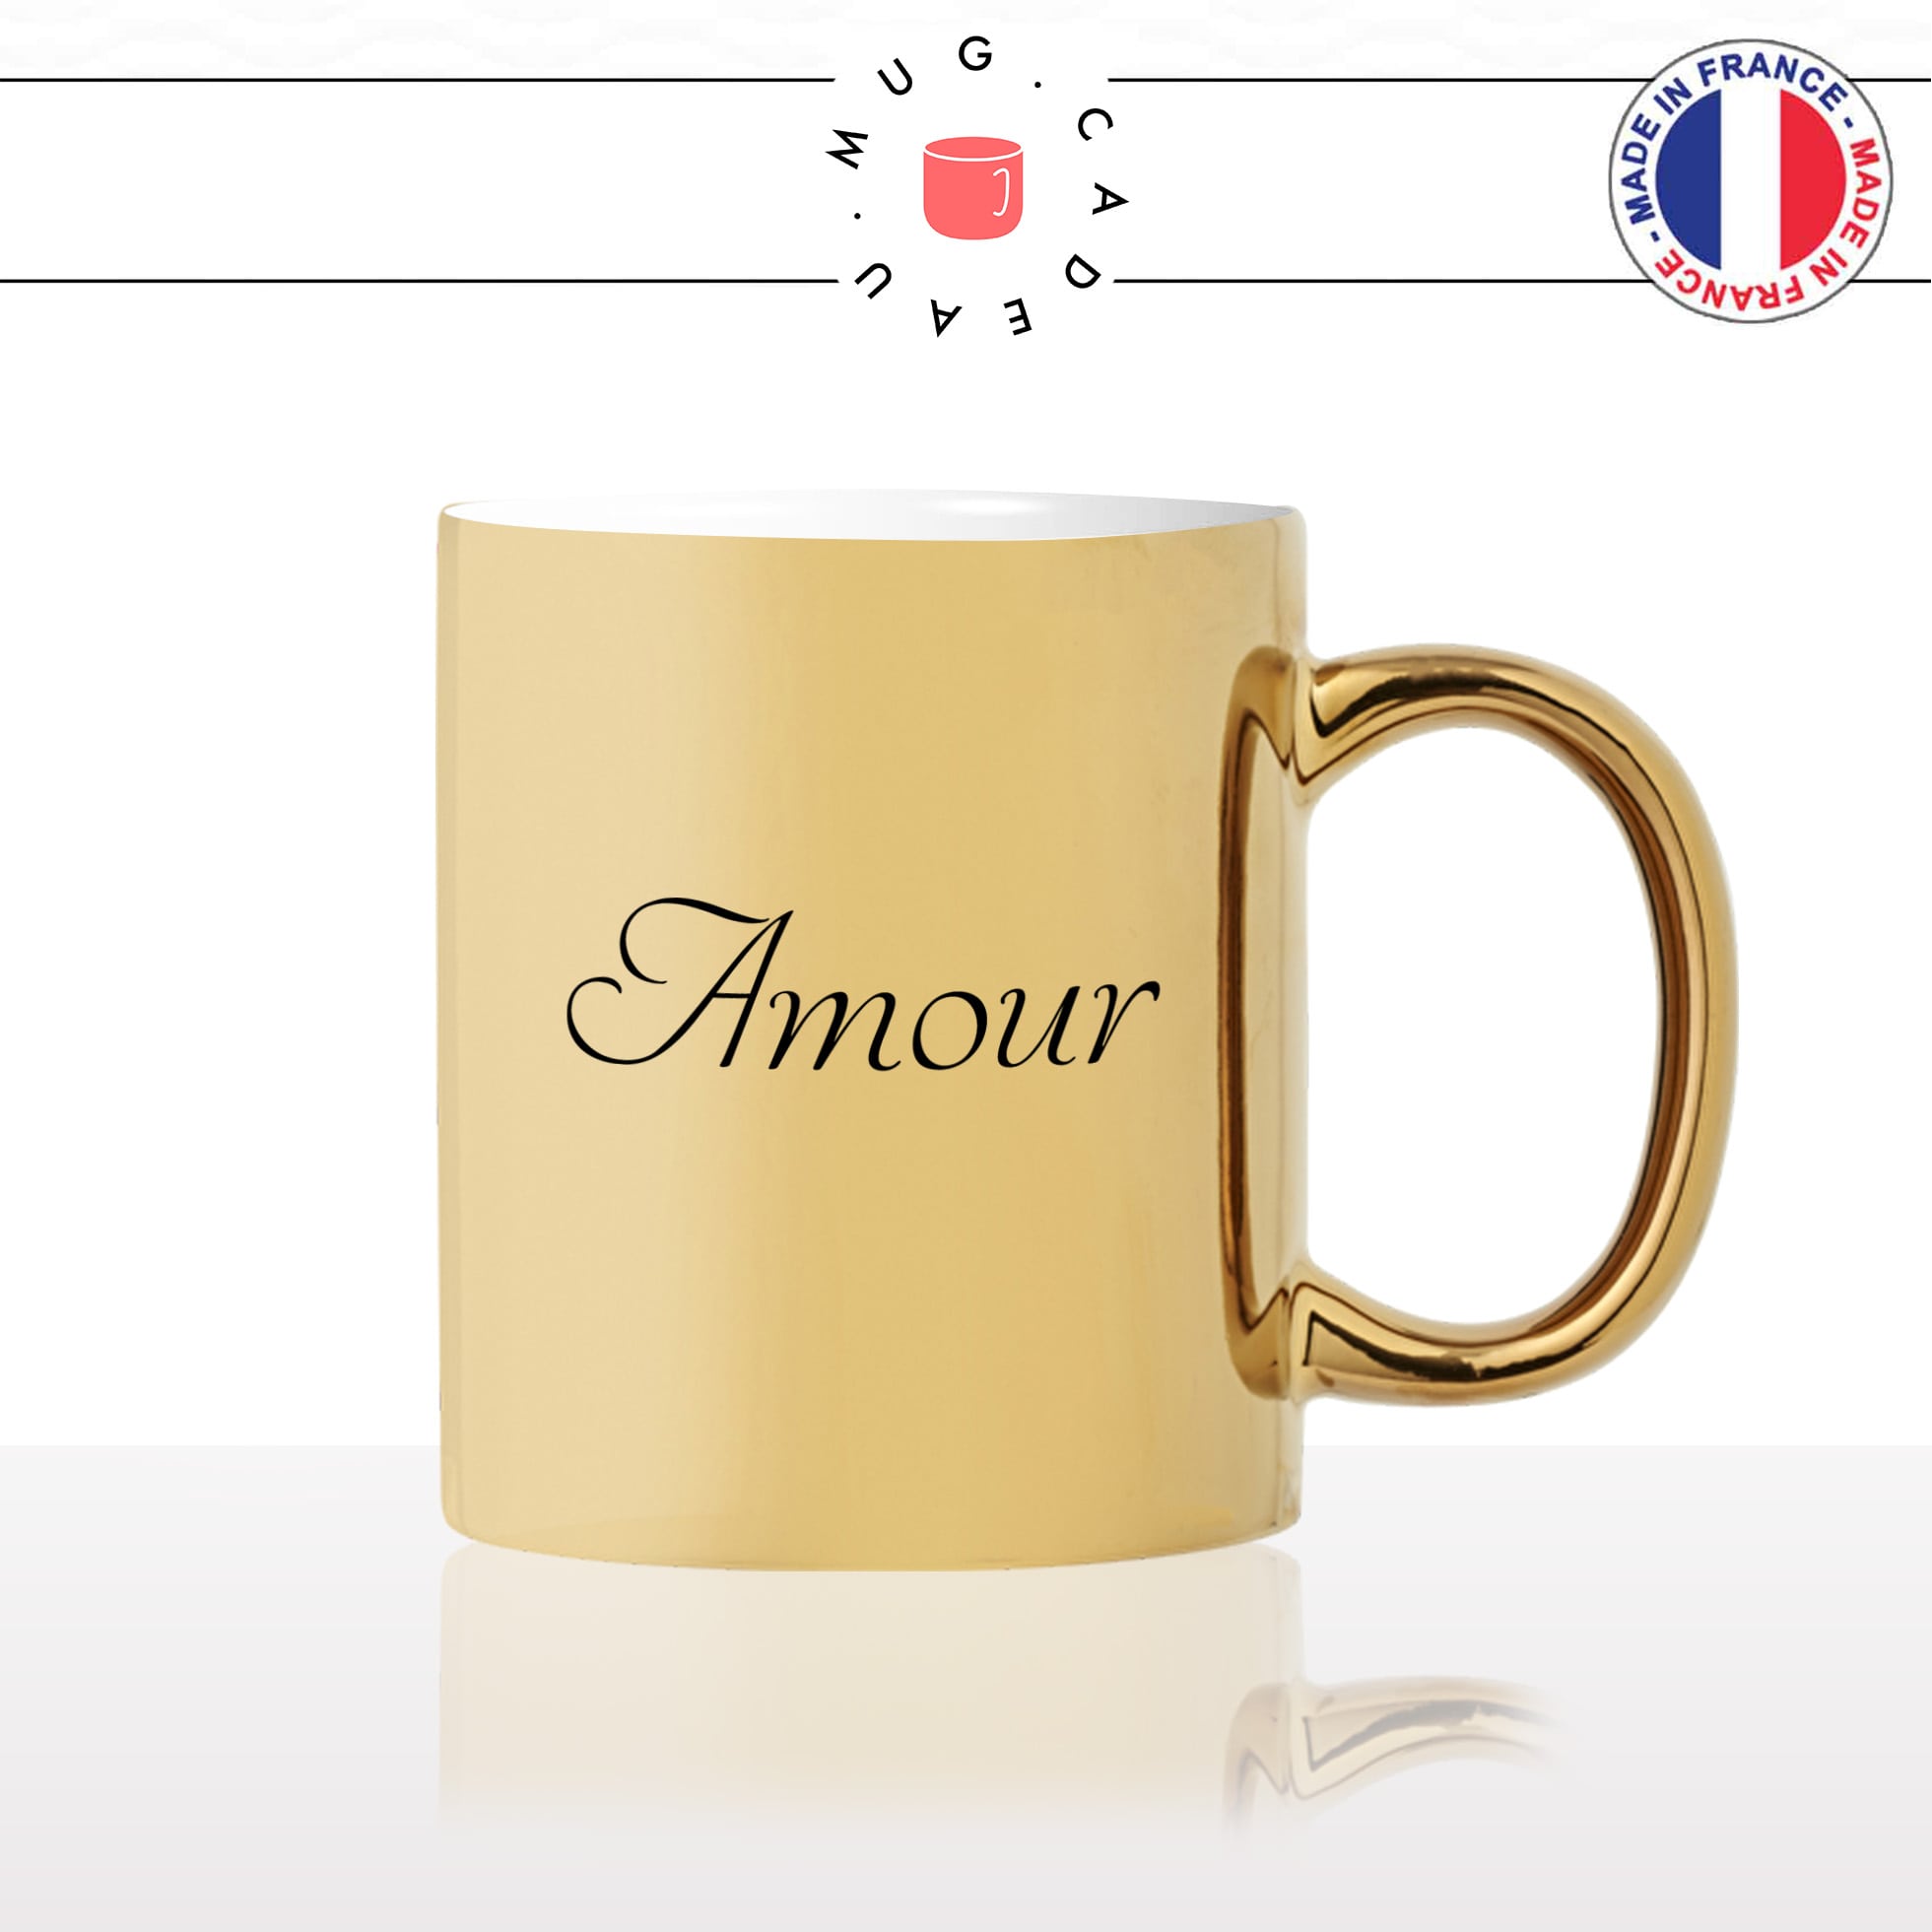 mug-tasse-or-doré-amour-mot-lettrine-calligraphie-couple-st-valentin-je-taime-amour-couple-café-thé-idée-cadeau-original-personnalisé2-min